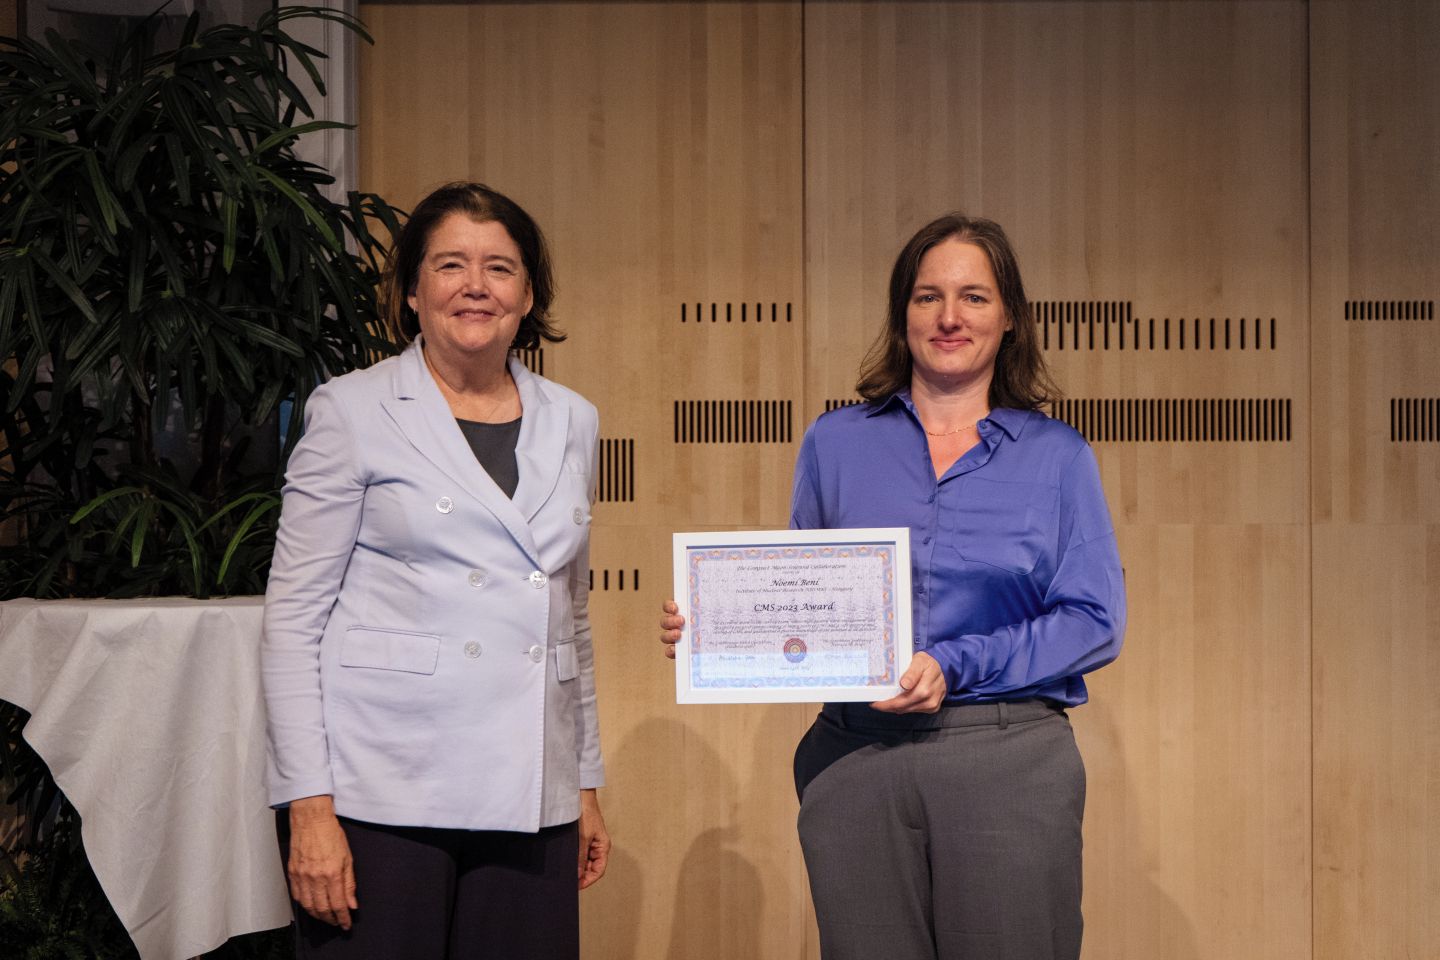 Rangos díjat kapott a debreceni kutató